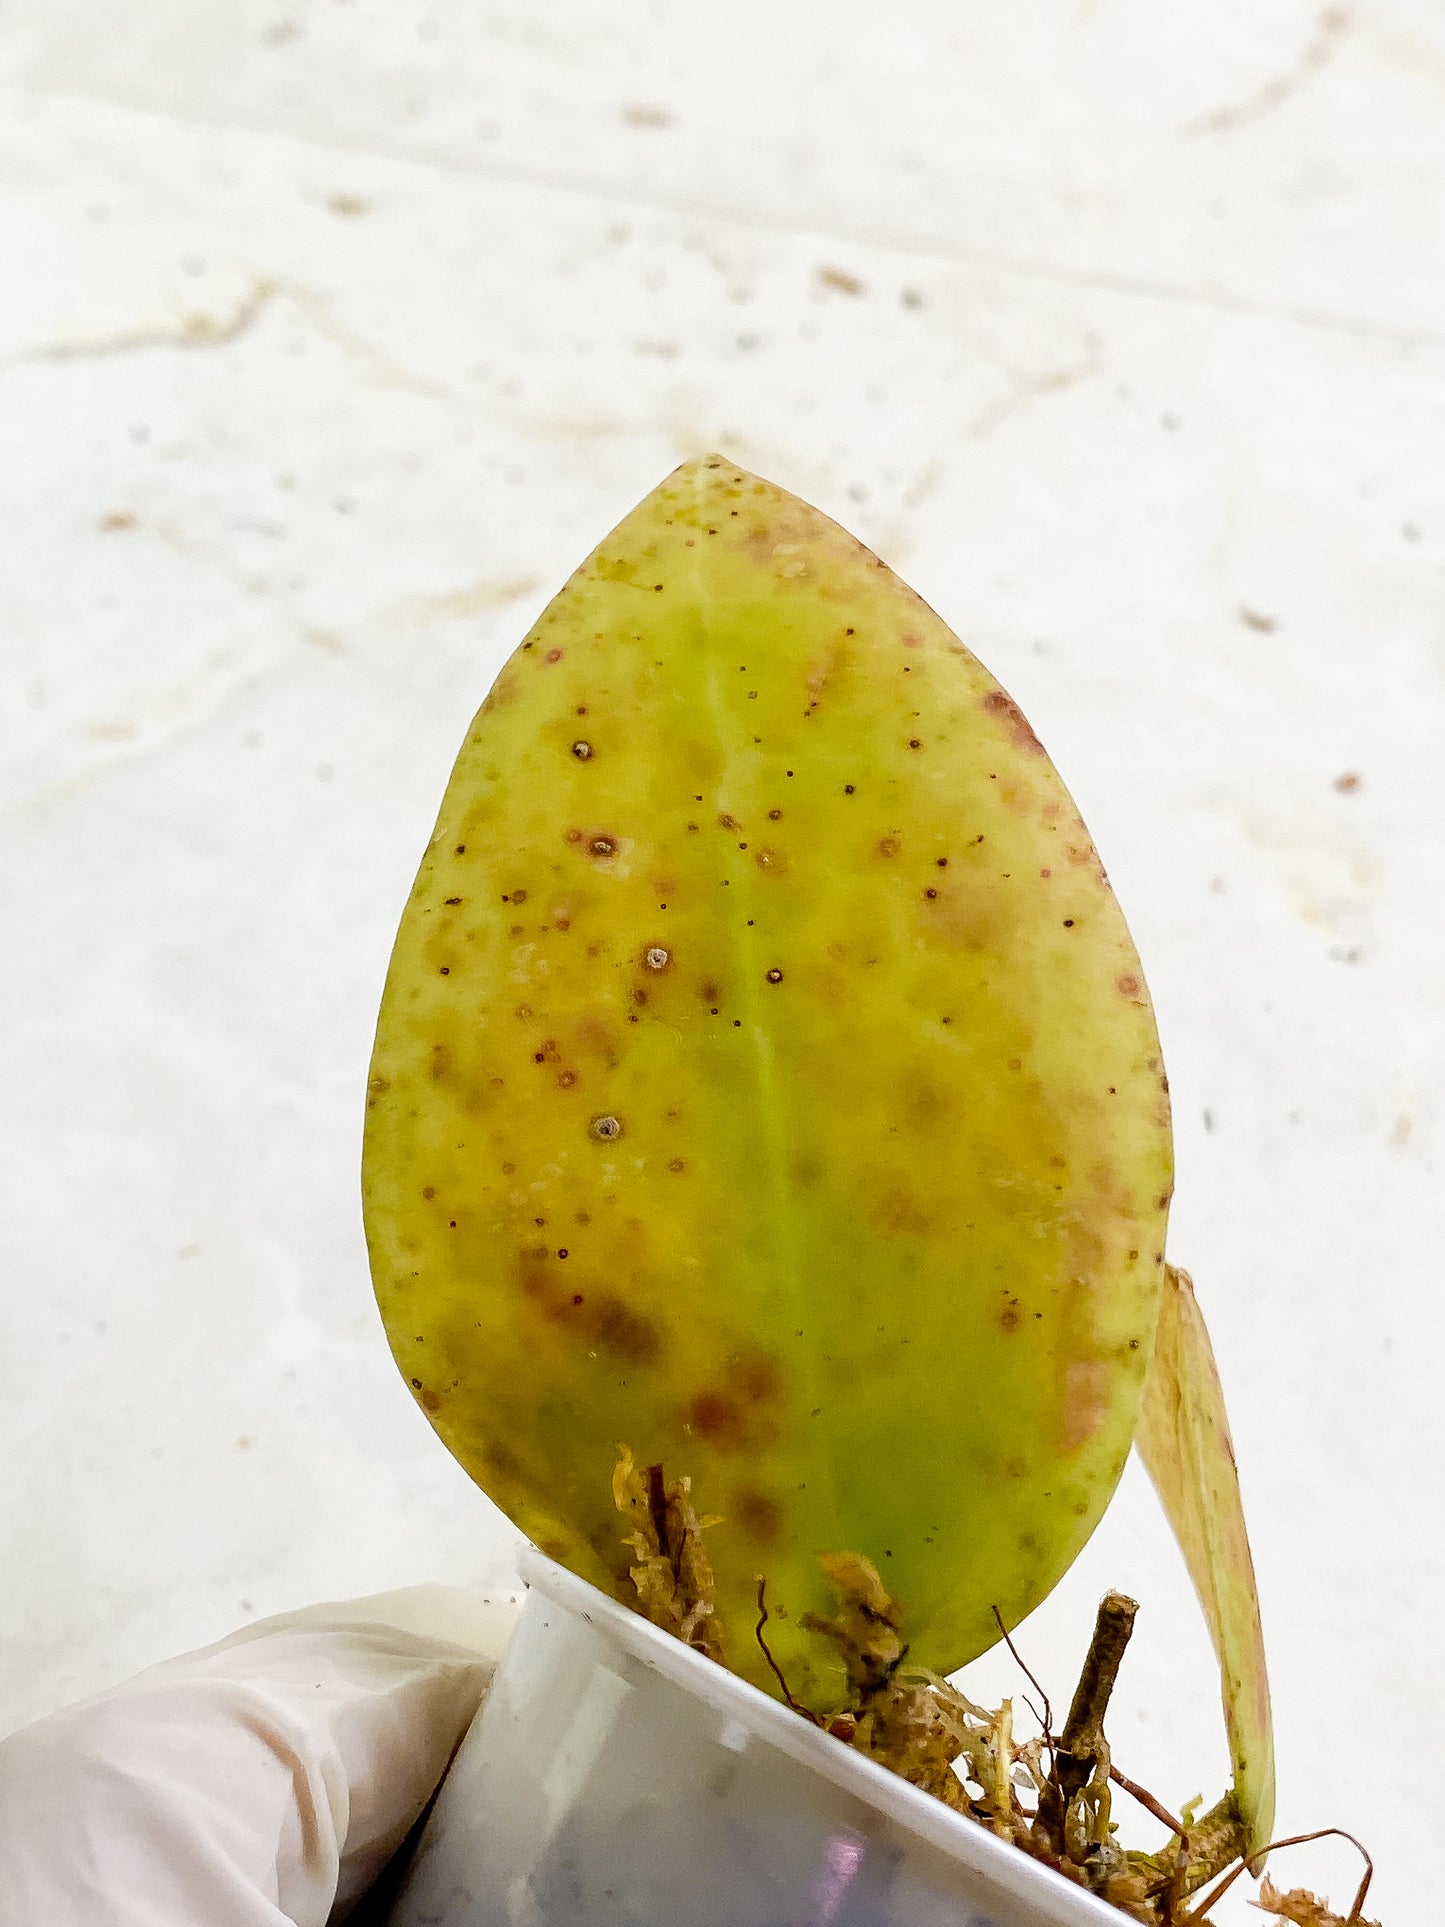 Hoya sulawesi gps 8867 2 leaves  slightly rooted sunstressed